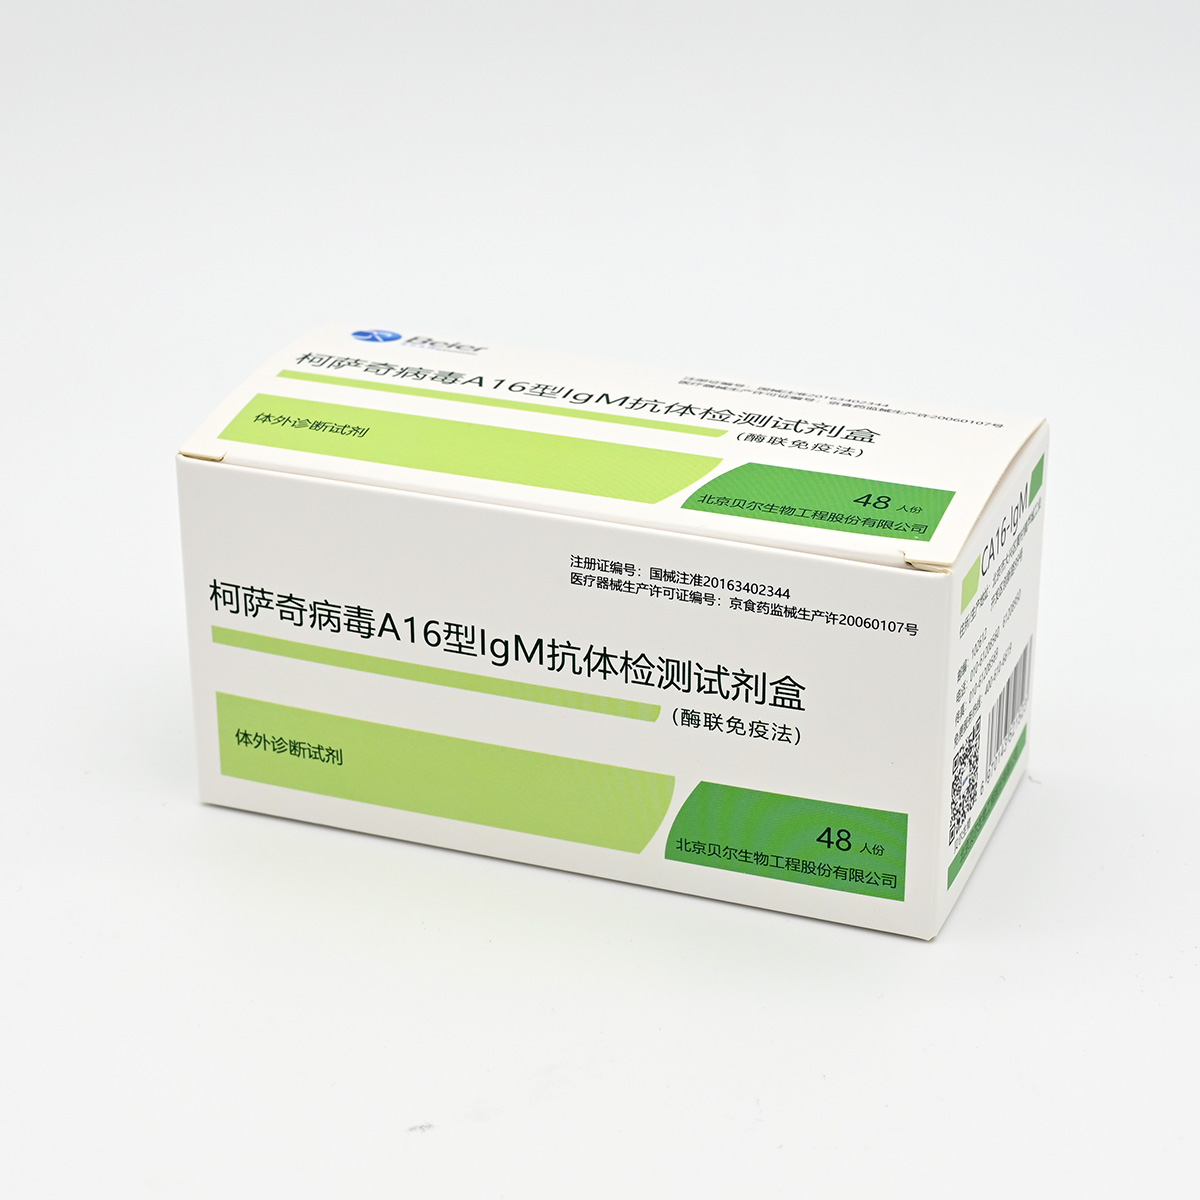 【贝尔】柯萨奇病毒A16型IgM抗体检测试剂盒(CA16-IgM)(酶联免疫法)